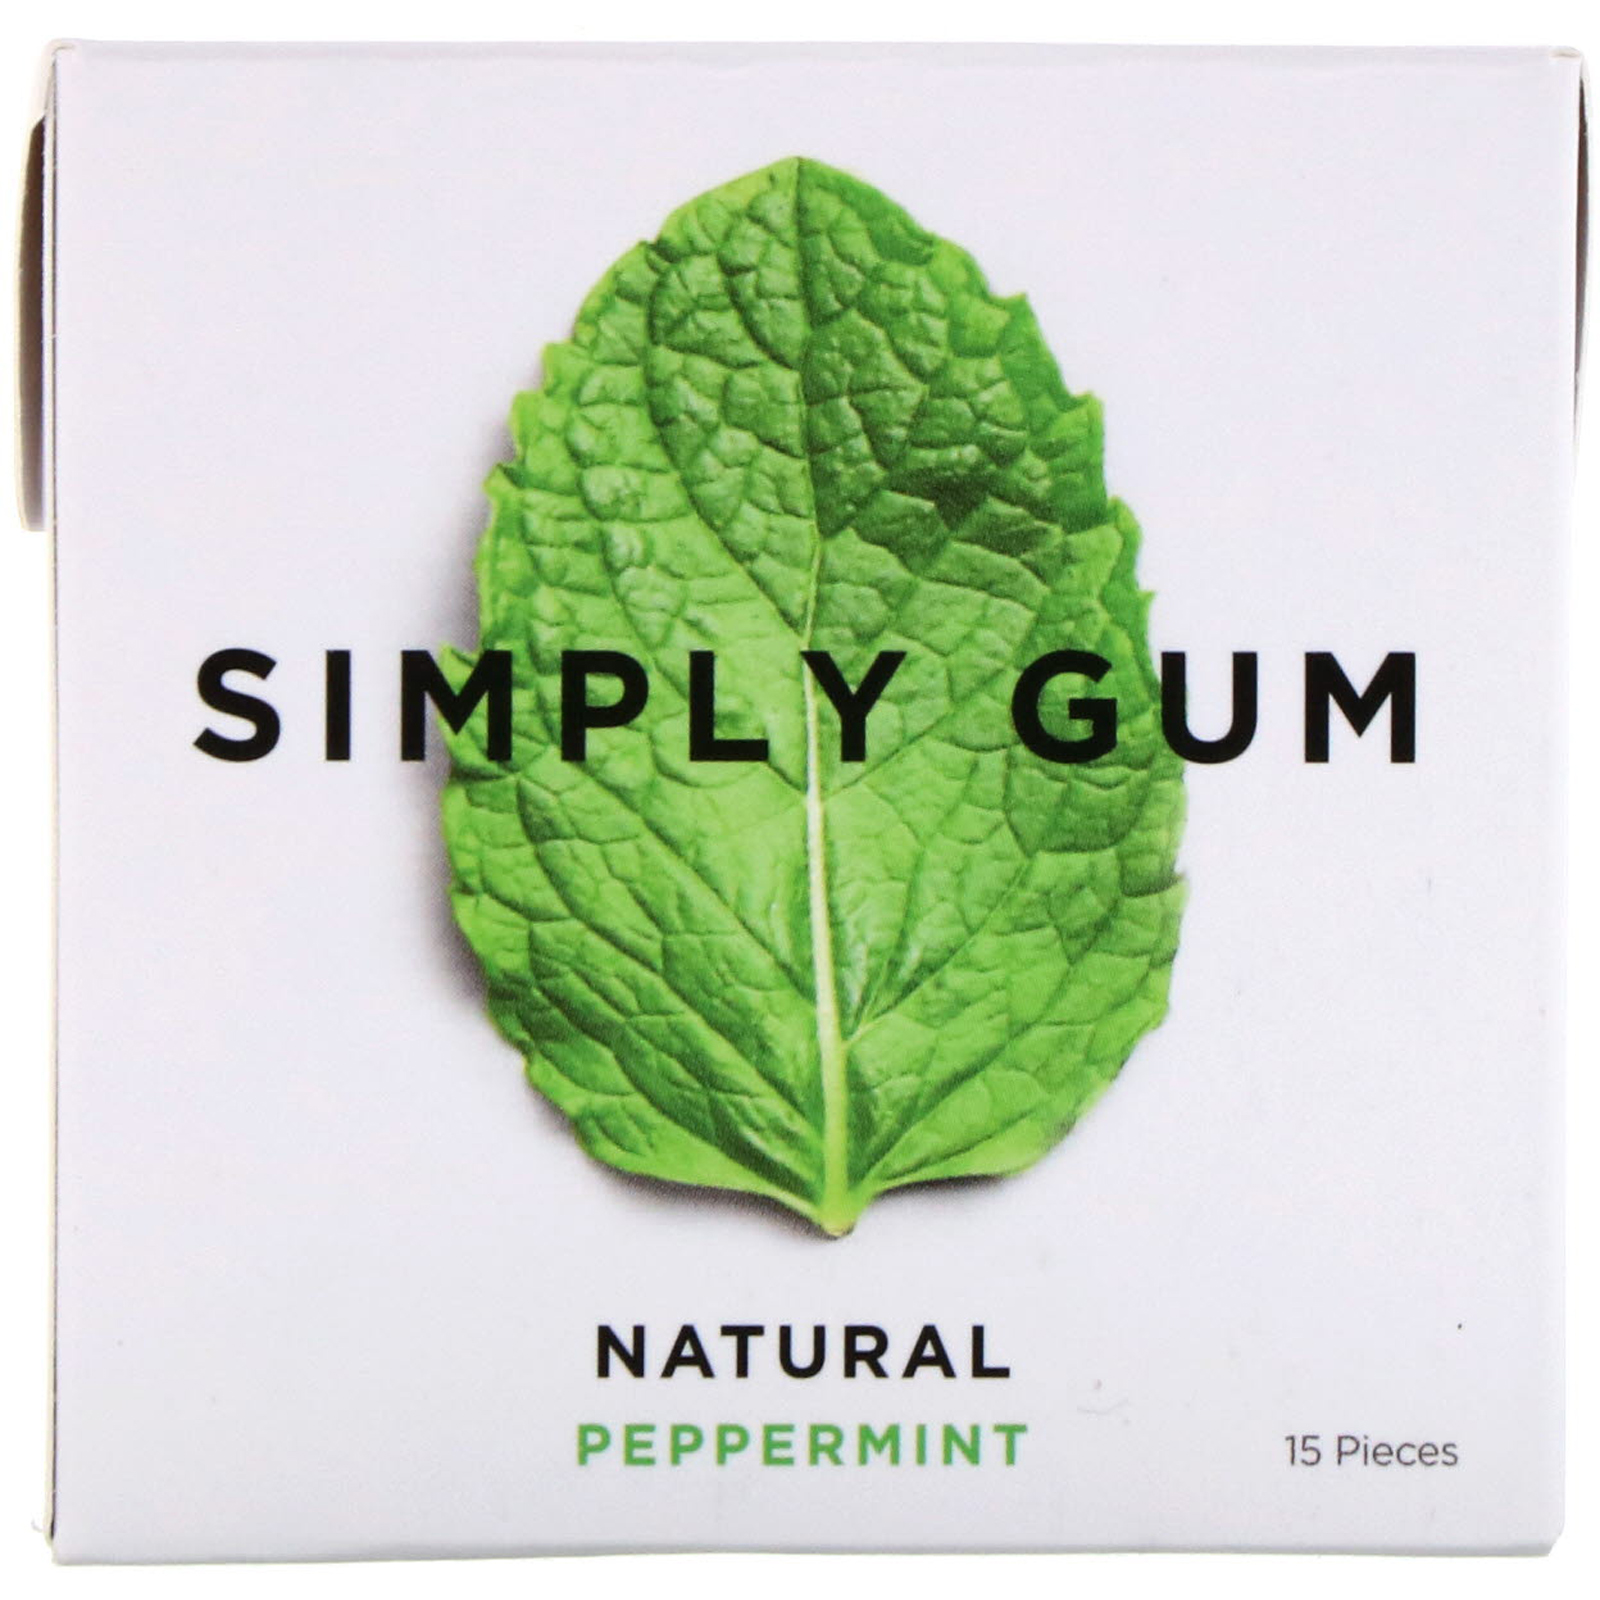 Simply gum. Вкусняшка simply Gum. Жвачка сладкая мята. Simply Gum просрочена.